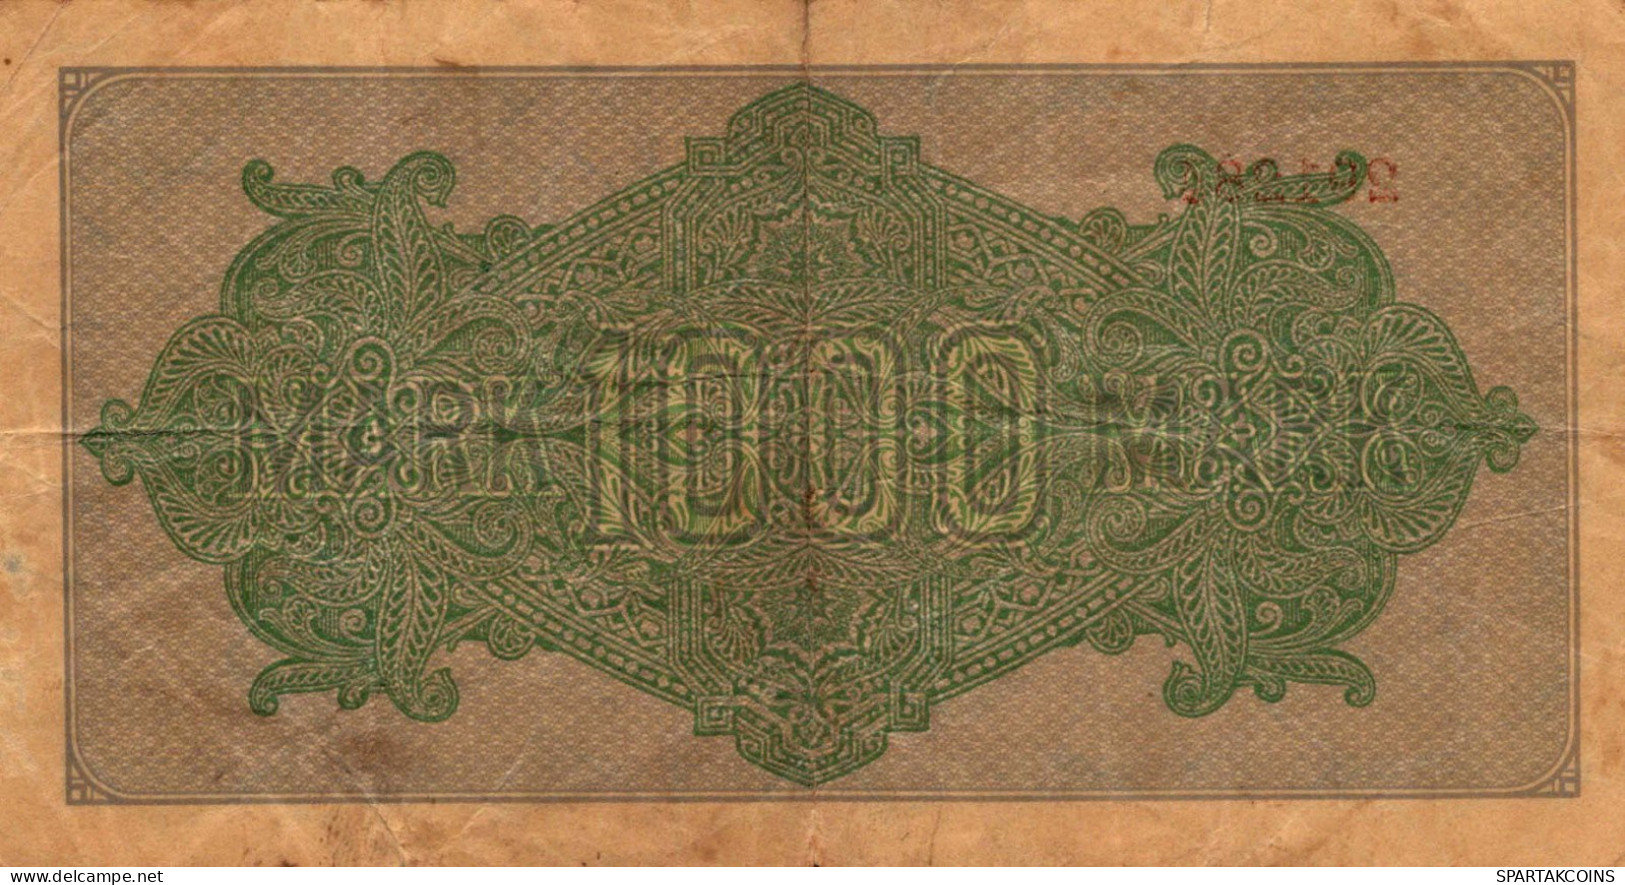 1000 MARK 1922 Stadt BERLIN DEUTSCHLAND Papiergeld Banknote #PL443 - [11] Emissions Locales